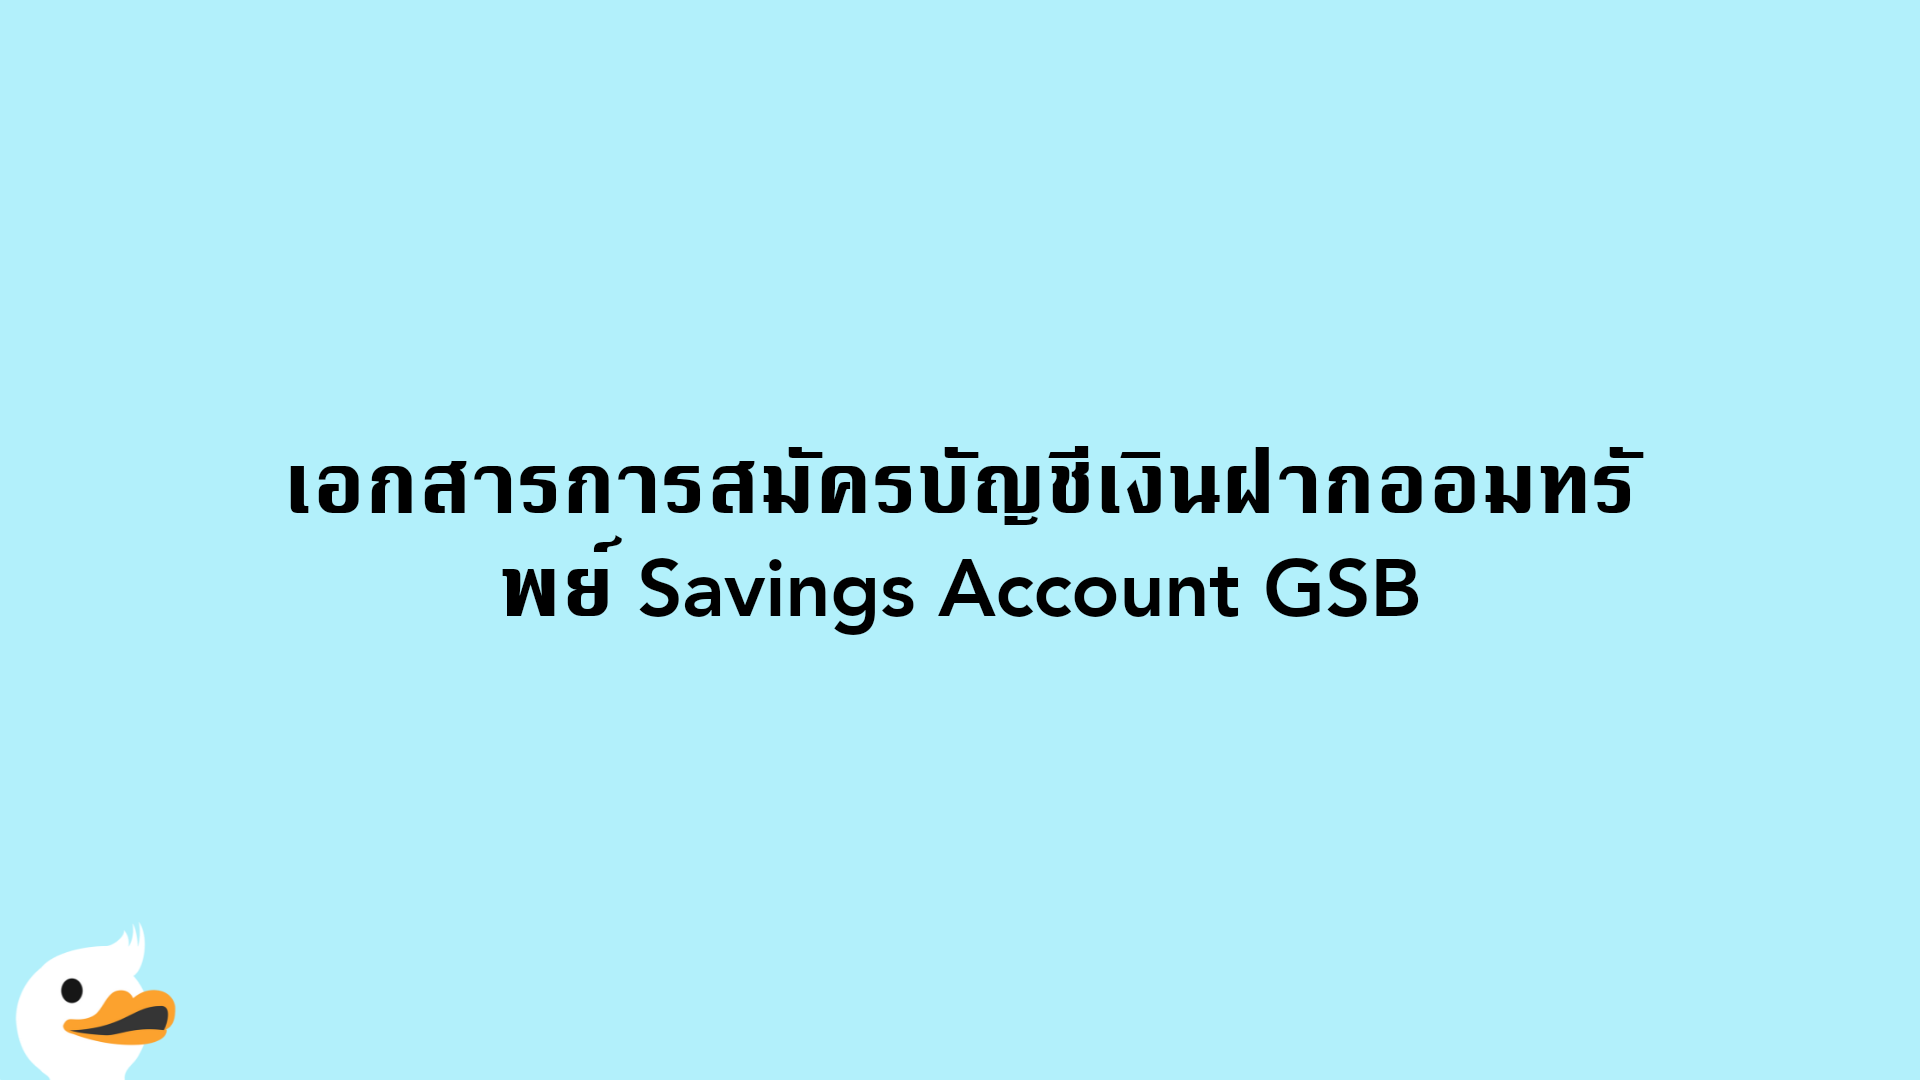 เอกสารการสมัครบัญชีเงินฝากออมทรัพย์ Savings Account GSB